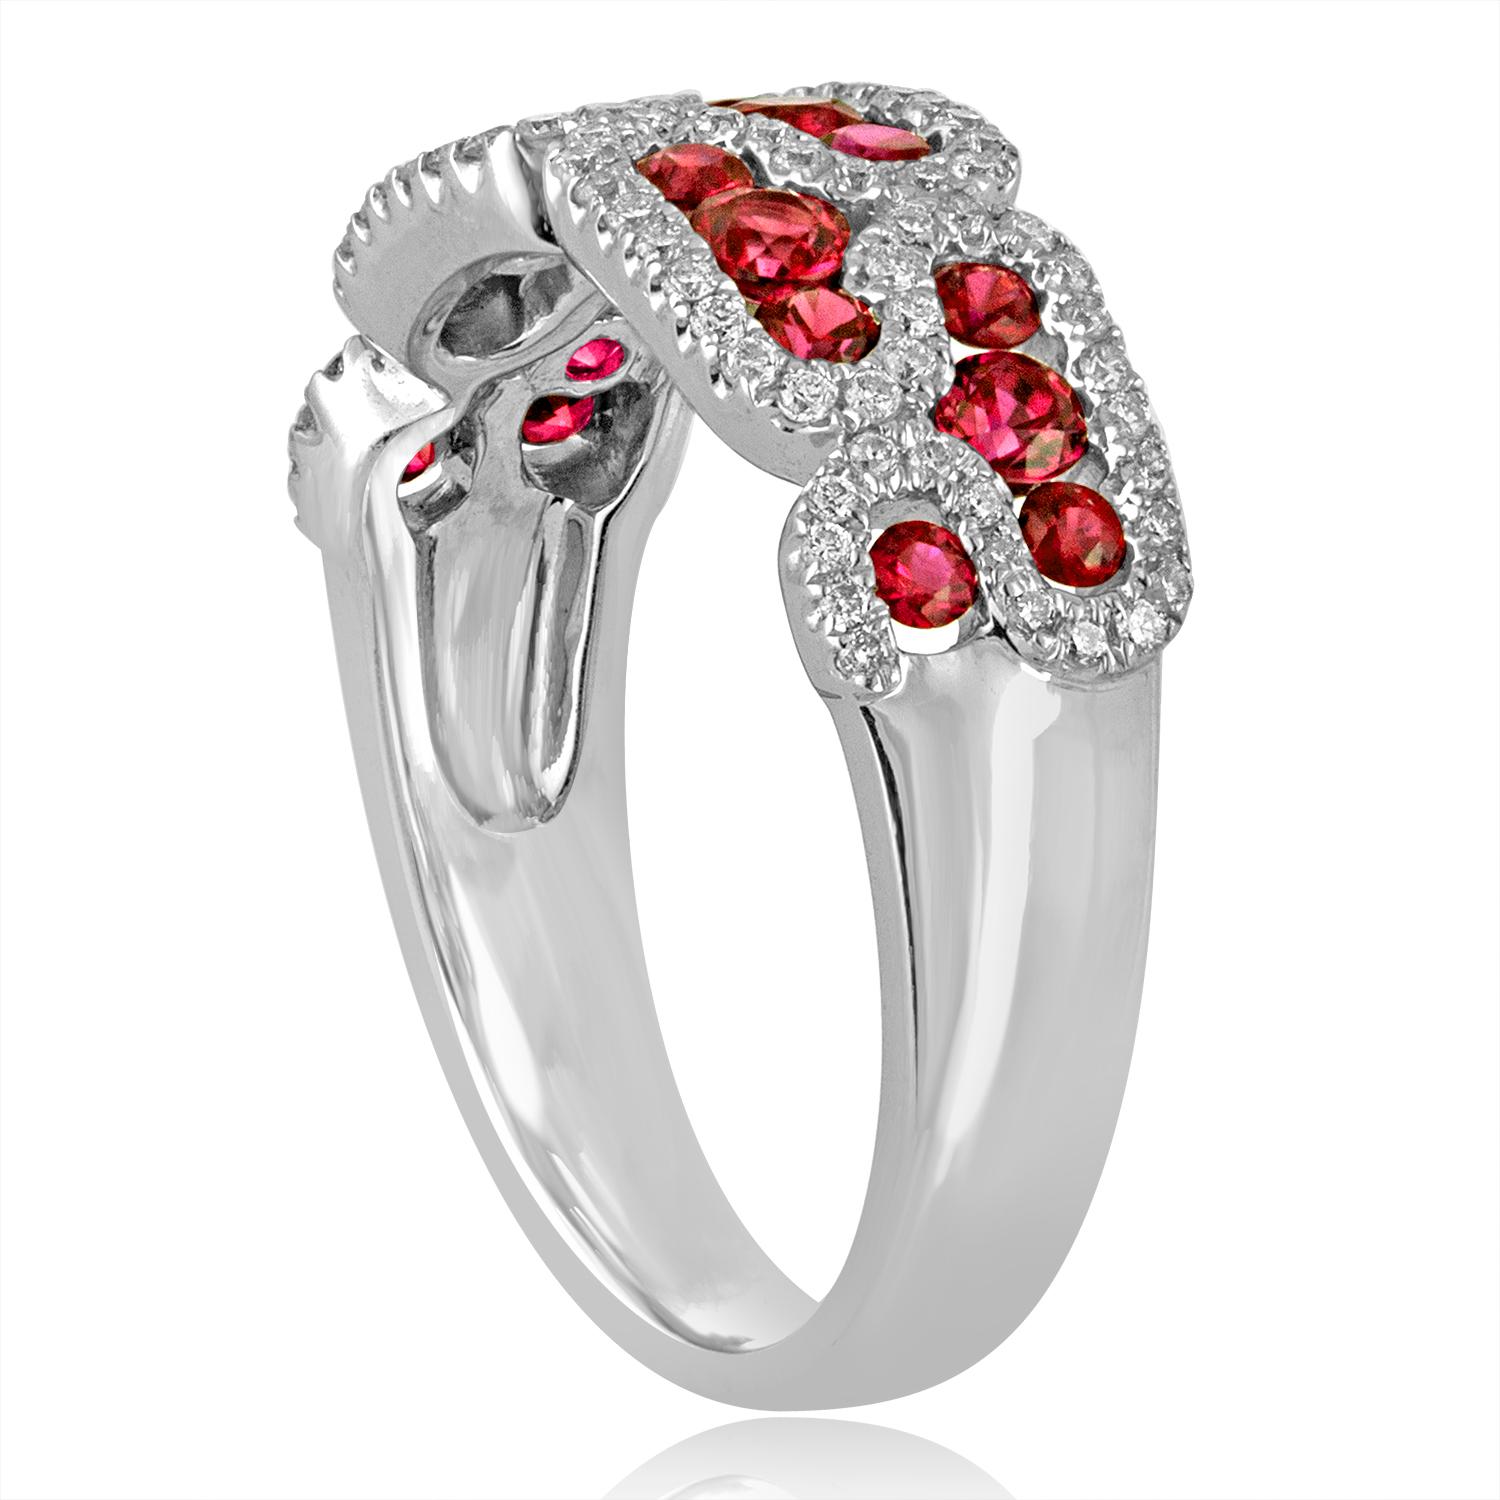 Magnifique bracelet en rubis et diamants
L'anneau est en or blanc 18K
Il y a 0.43 Carats en Diamants F/G VS/SI
Il y a 0.85 Carats en Rubis
La bande fait 0,25